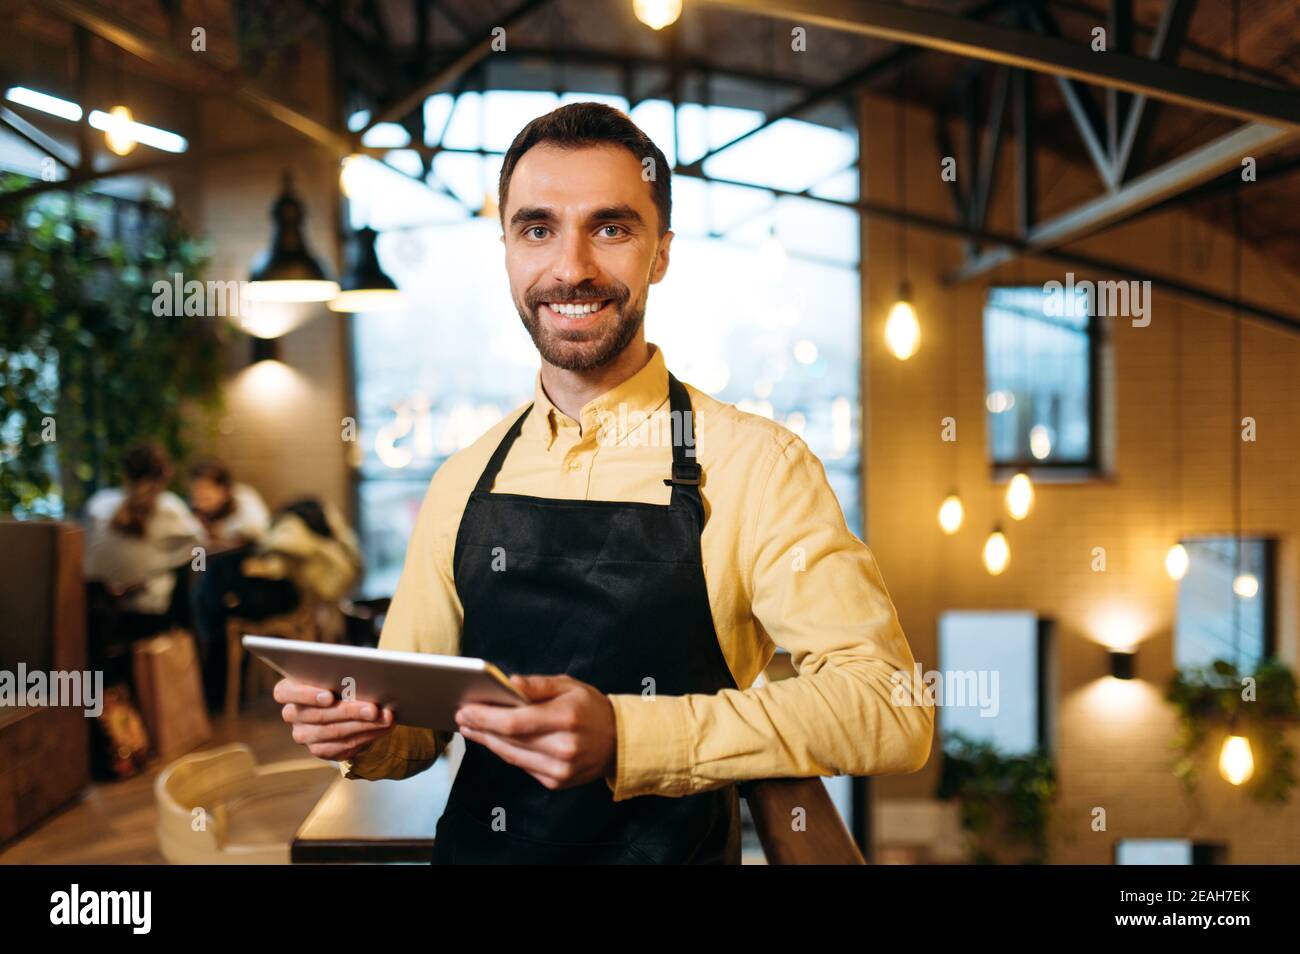 Attraktive glücklich kaukasischen männlichen Kellner oder Barista trägt schwarze Schürze steht in einem Restaurant, Café oder Bar, hält ein Menü und mit freundlichem Lächeln schaut auf die Kamera Stockfoto